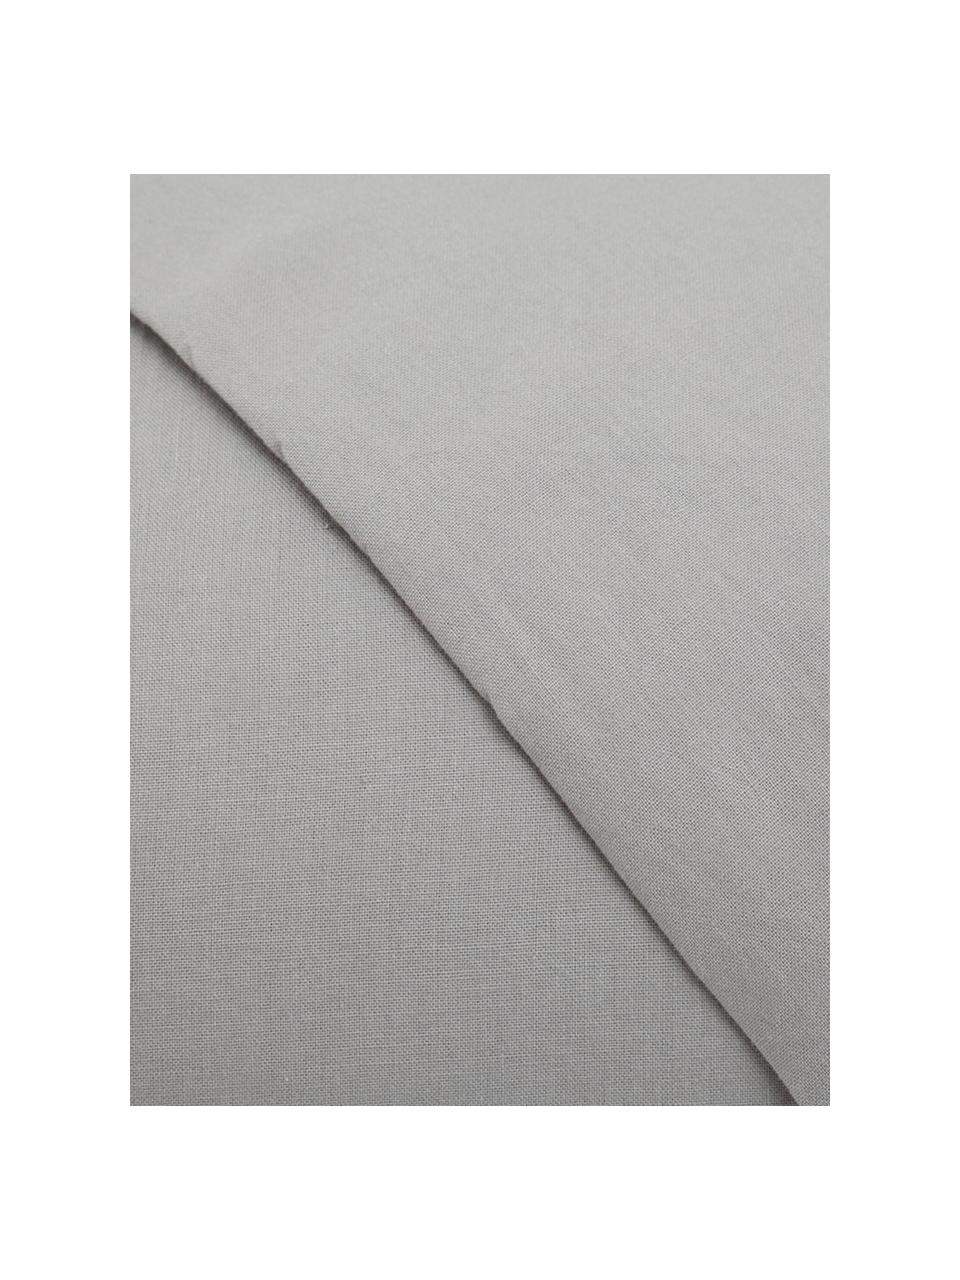 Parure copripiumino in cotone effetto stone washed Velle, Tessuto: cotone ranforce, Fronte e retro: grigio chiaro, 155 x 200 cm + 1 federa 50 x 80 cm